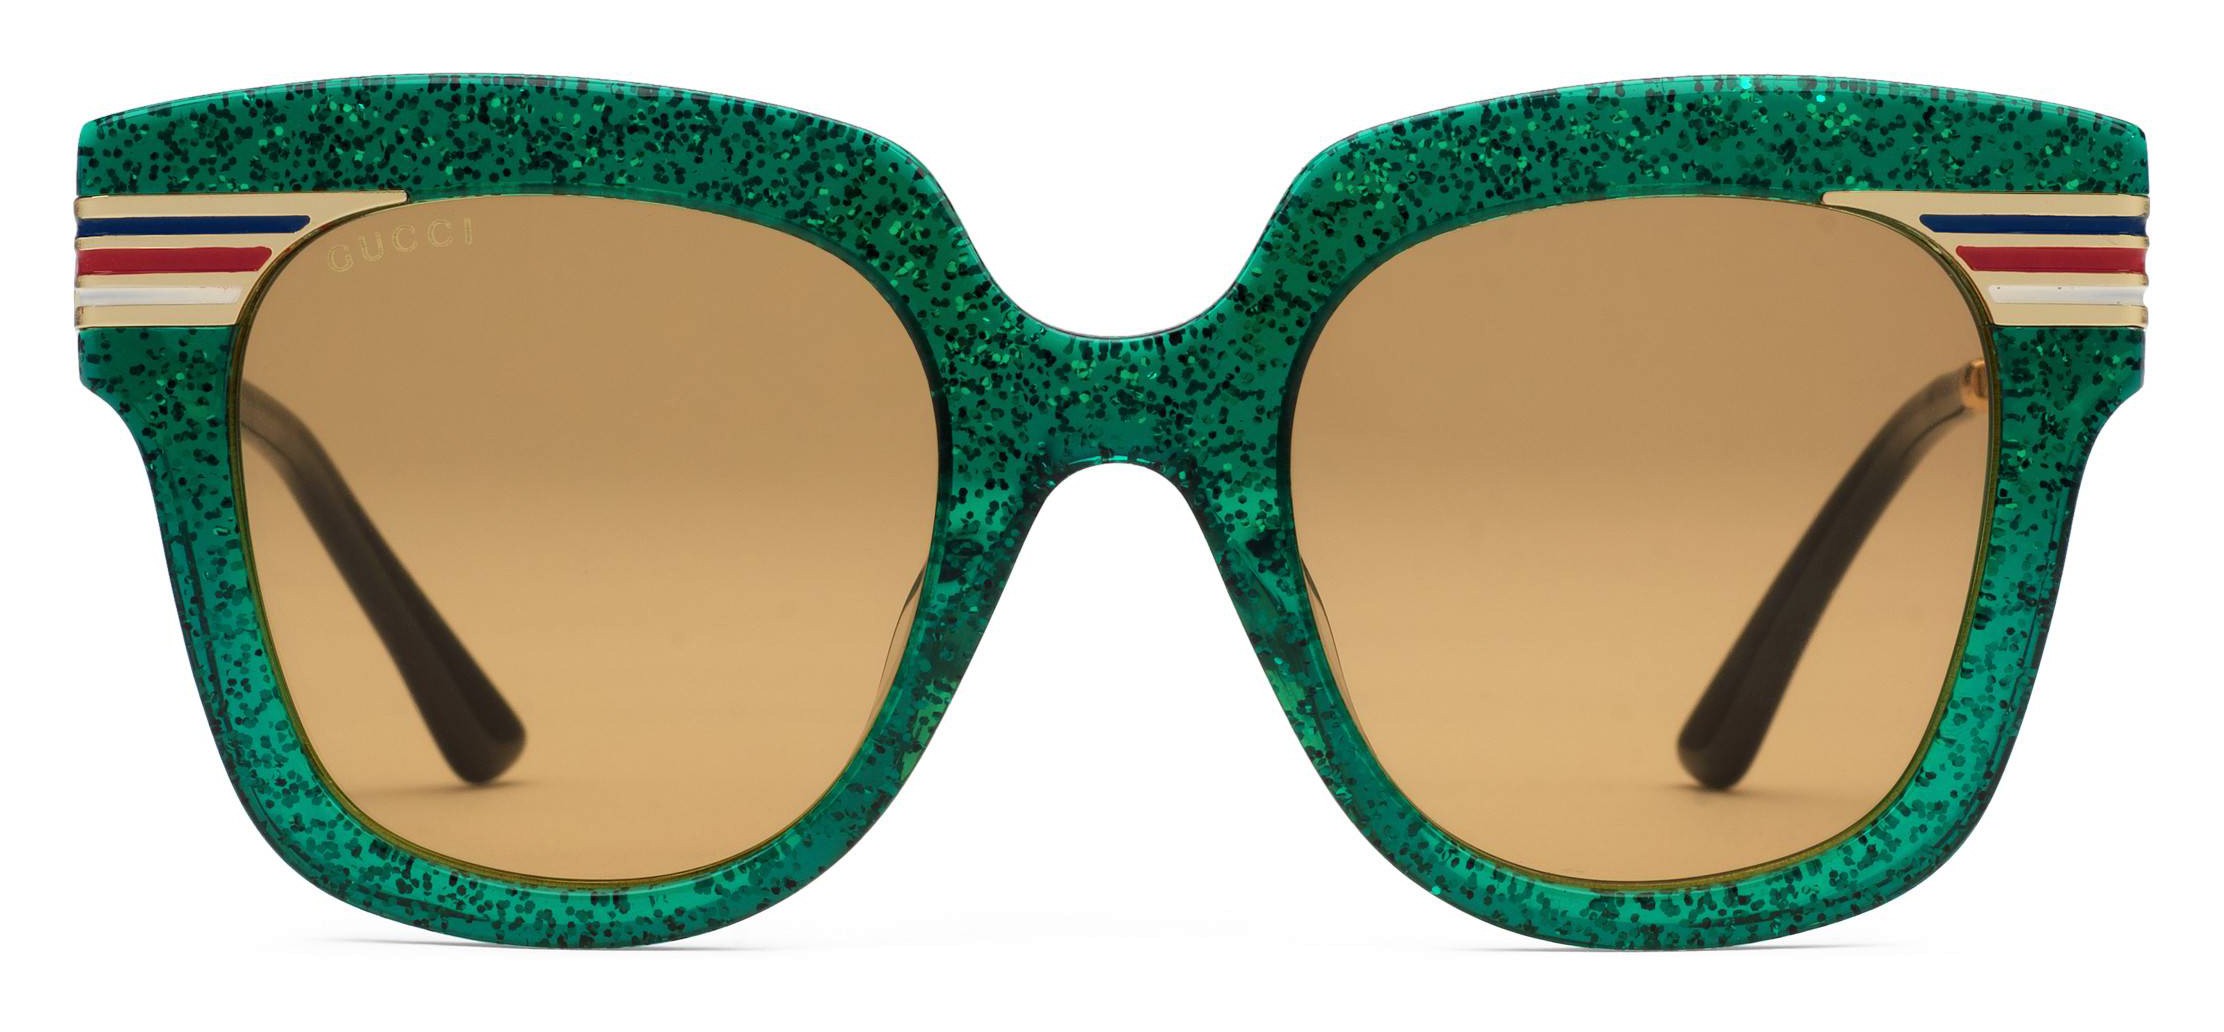 Desperat tidligere Mentalt Gucci - Square Frame Acetate Sunglasses Glitter - Emerald Green Glitter  Acetate and Gold - Gucci Eyewear - Avvenice